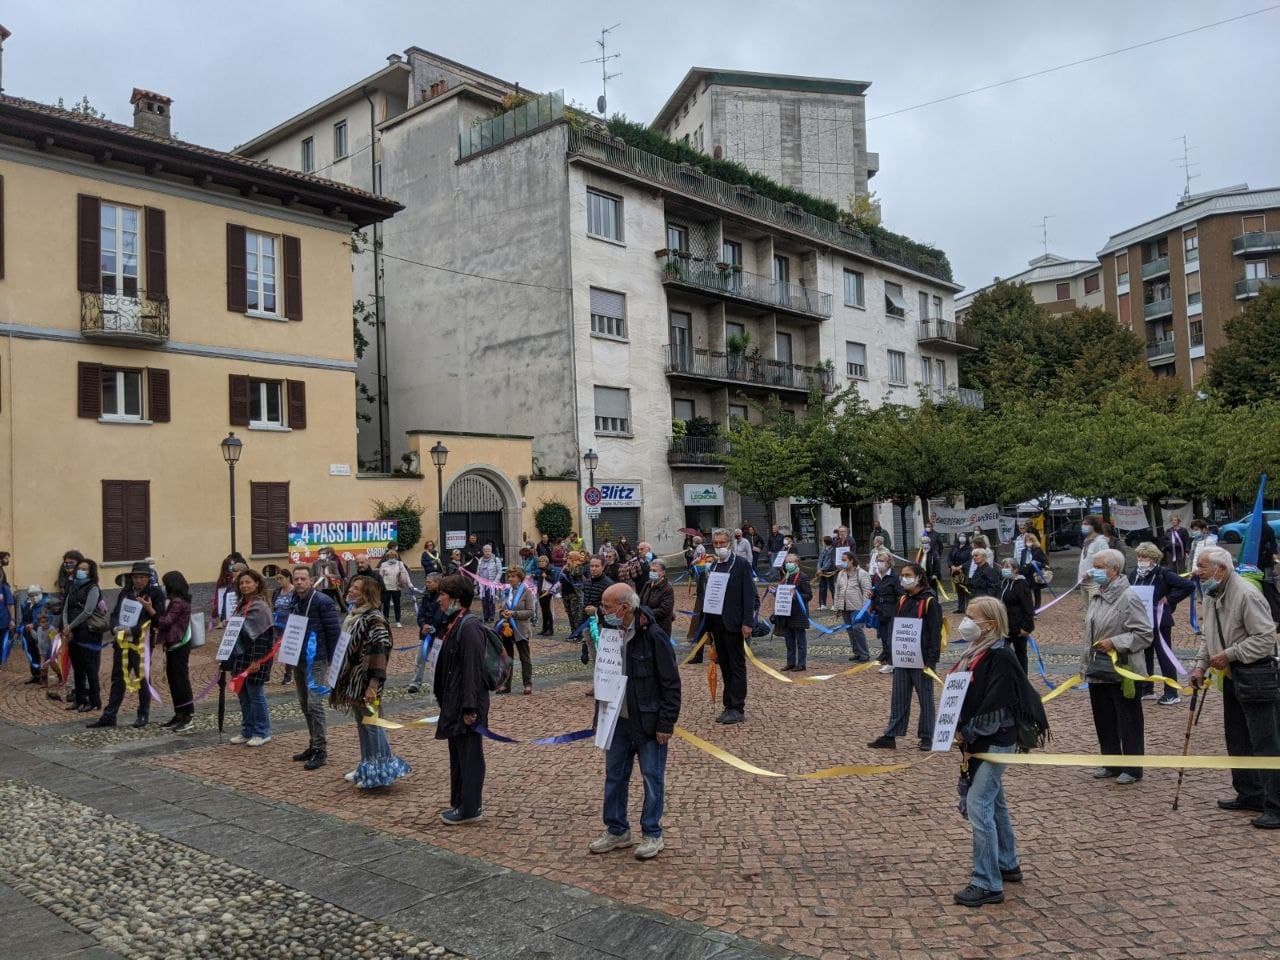 Catena umana in piazza: il Saronnese unito da nastri colorati nella lotta per la pace e la solidarietà